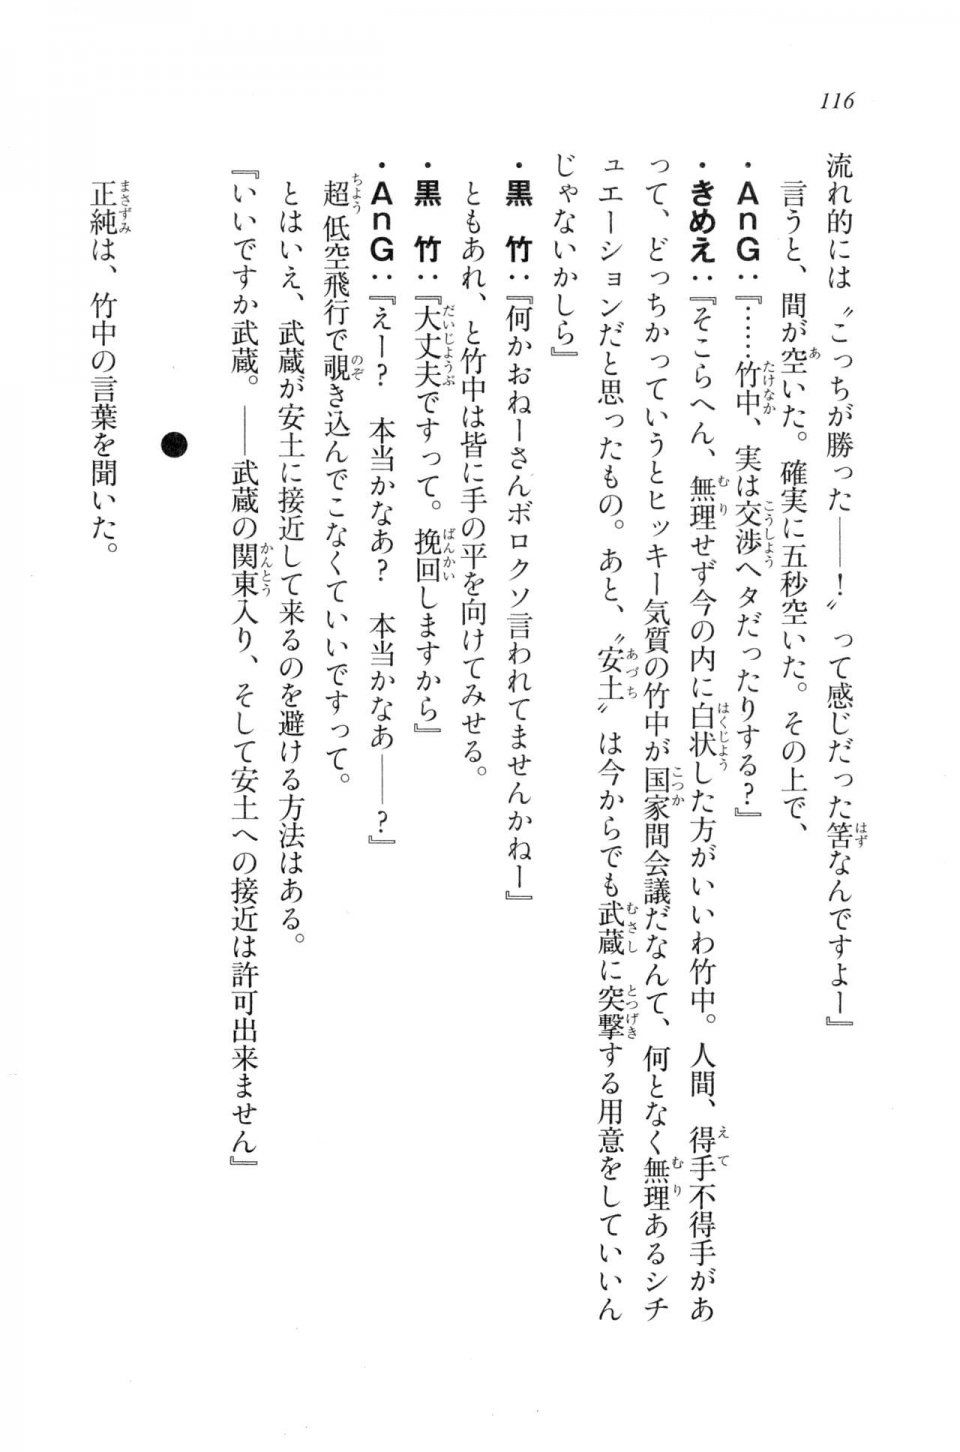 Kyoukai Senjou no Horizon LN Vol 20(8B) - Photo #116